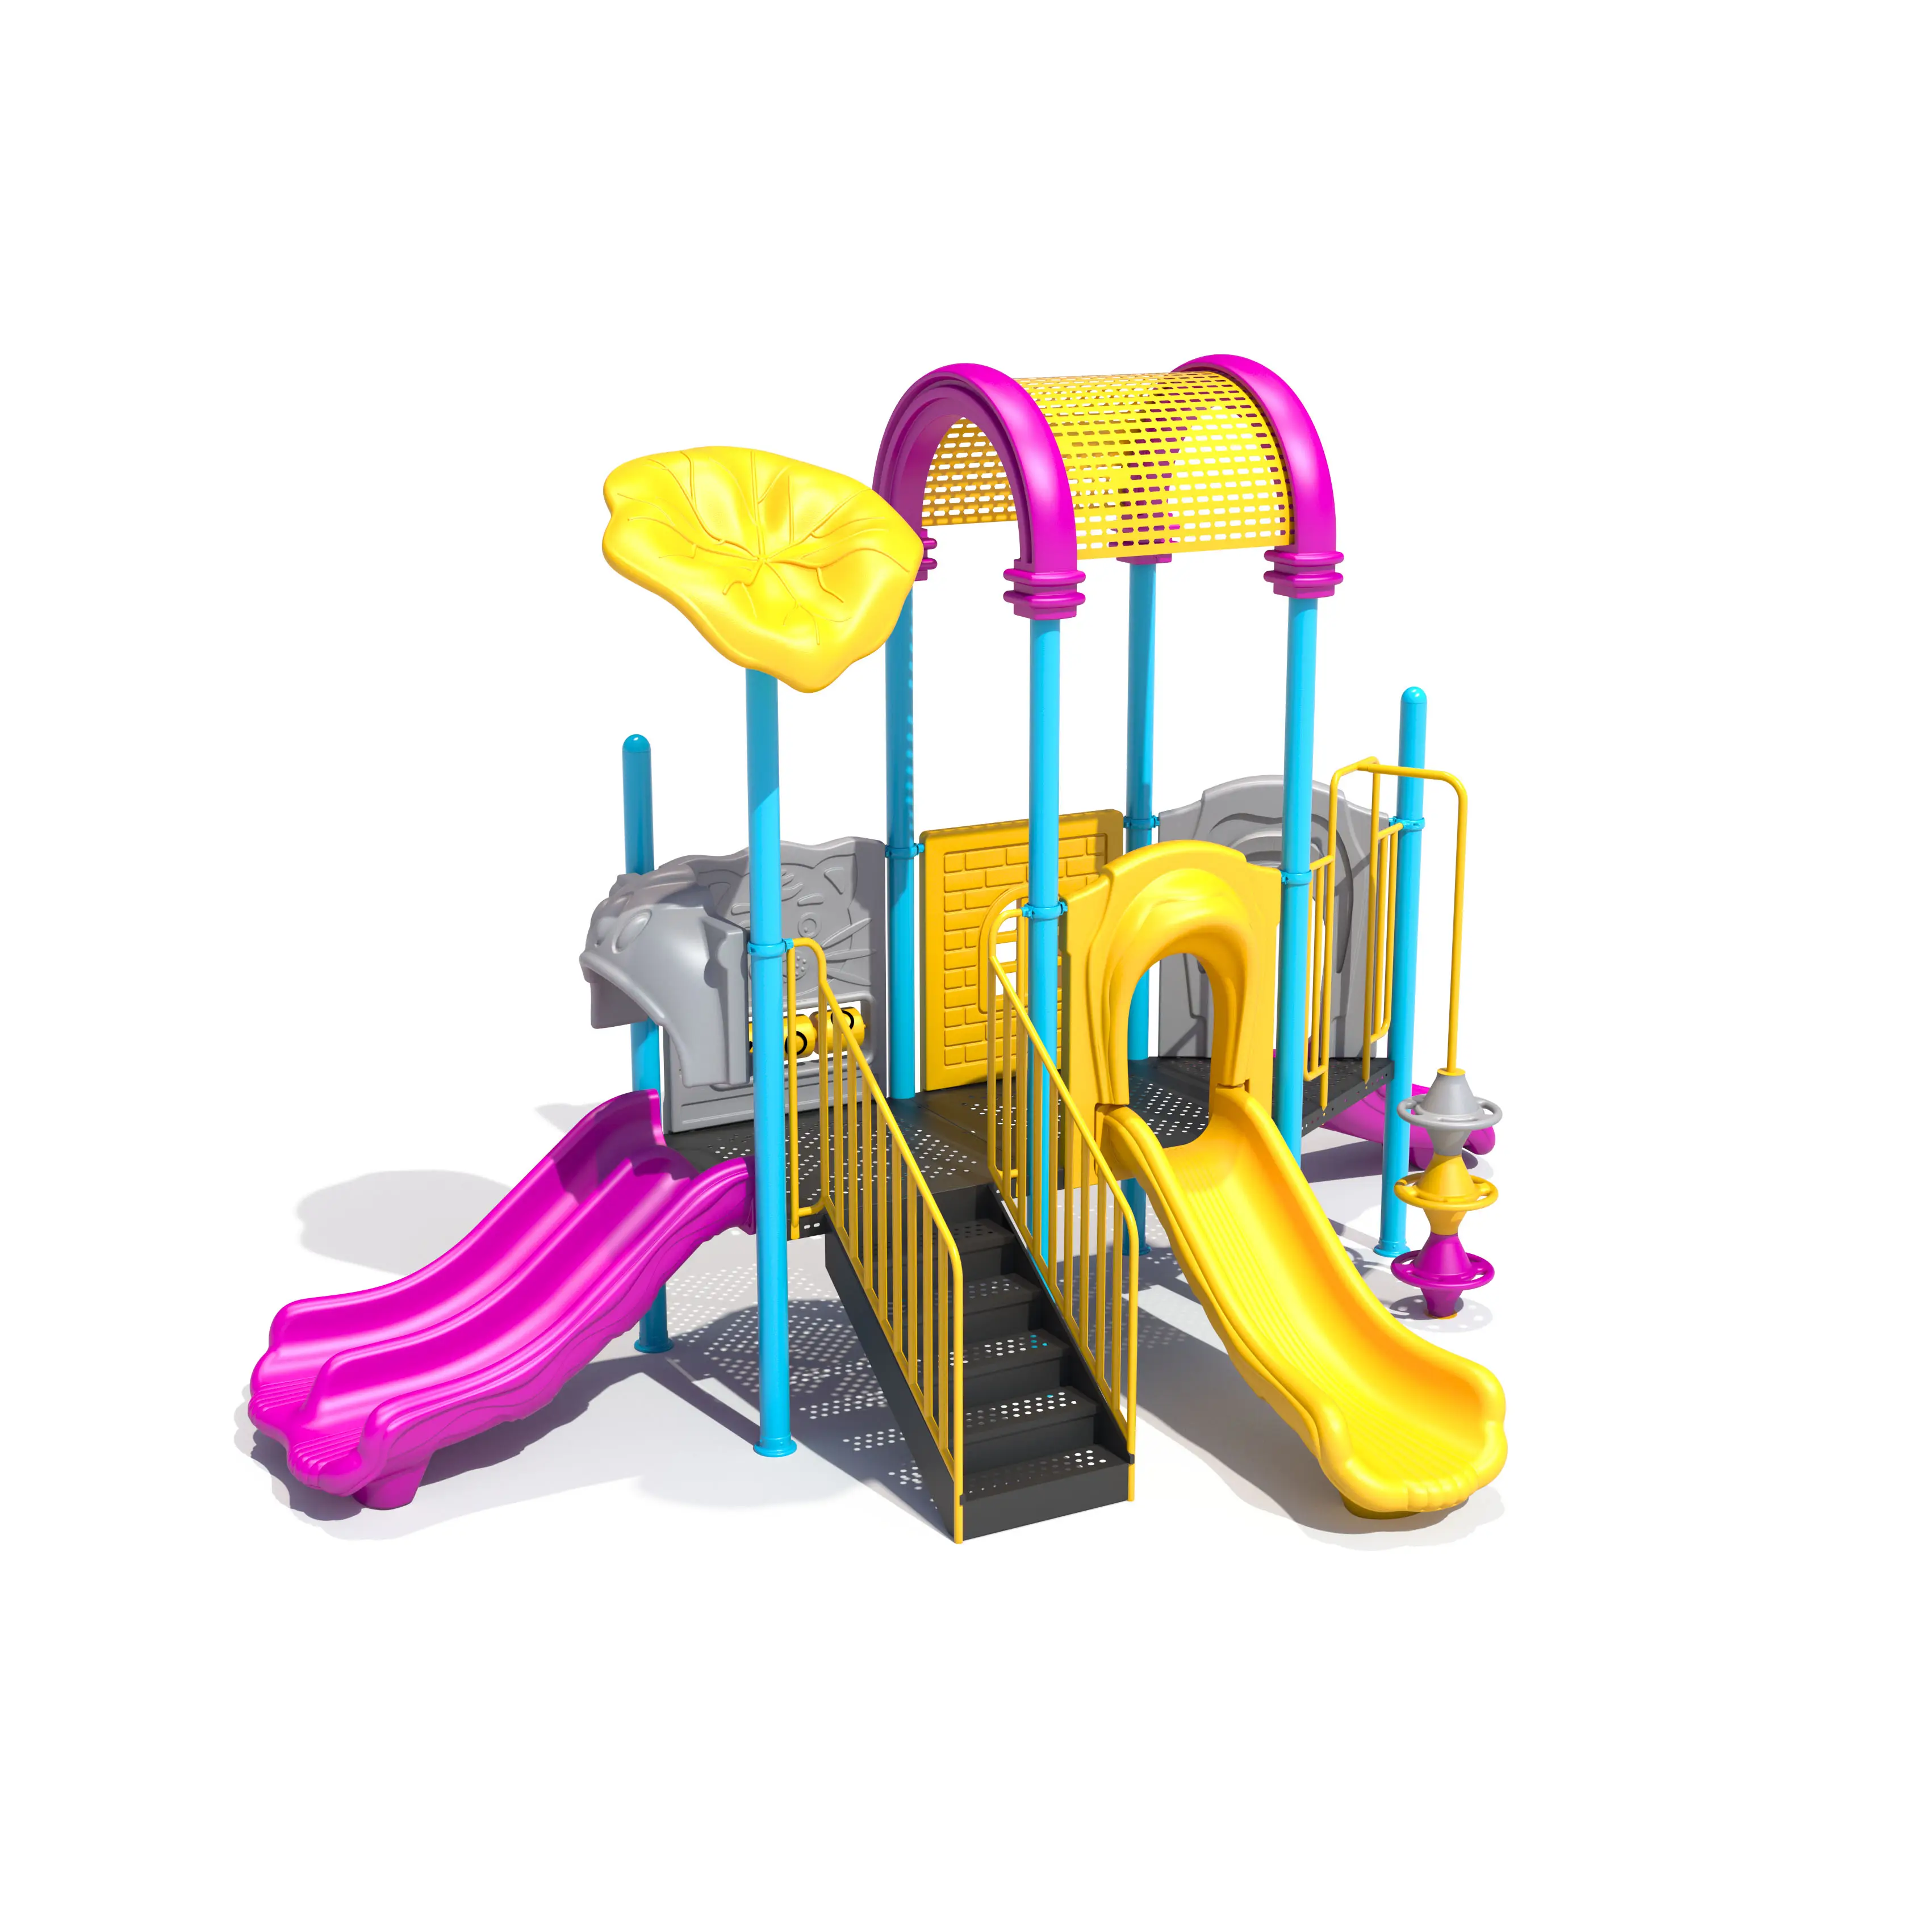 Scivolo in plastica di alta qualità più economico per bambini attrezzature per parchi giochi all'aperto 360 scivolo girevole parco giochi in età prescolare